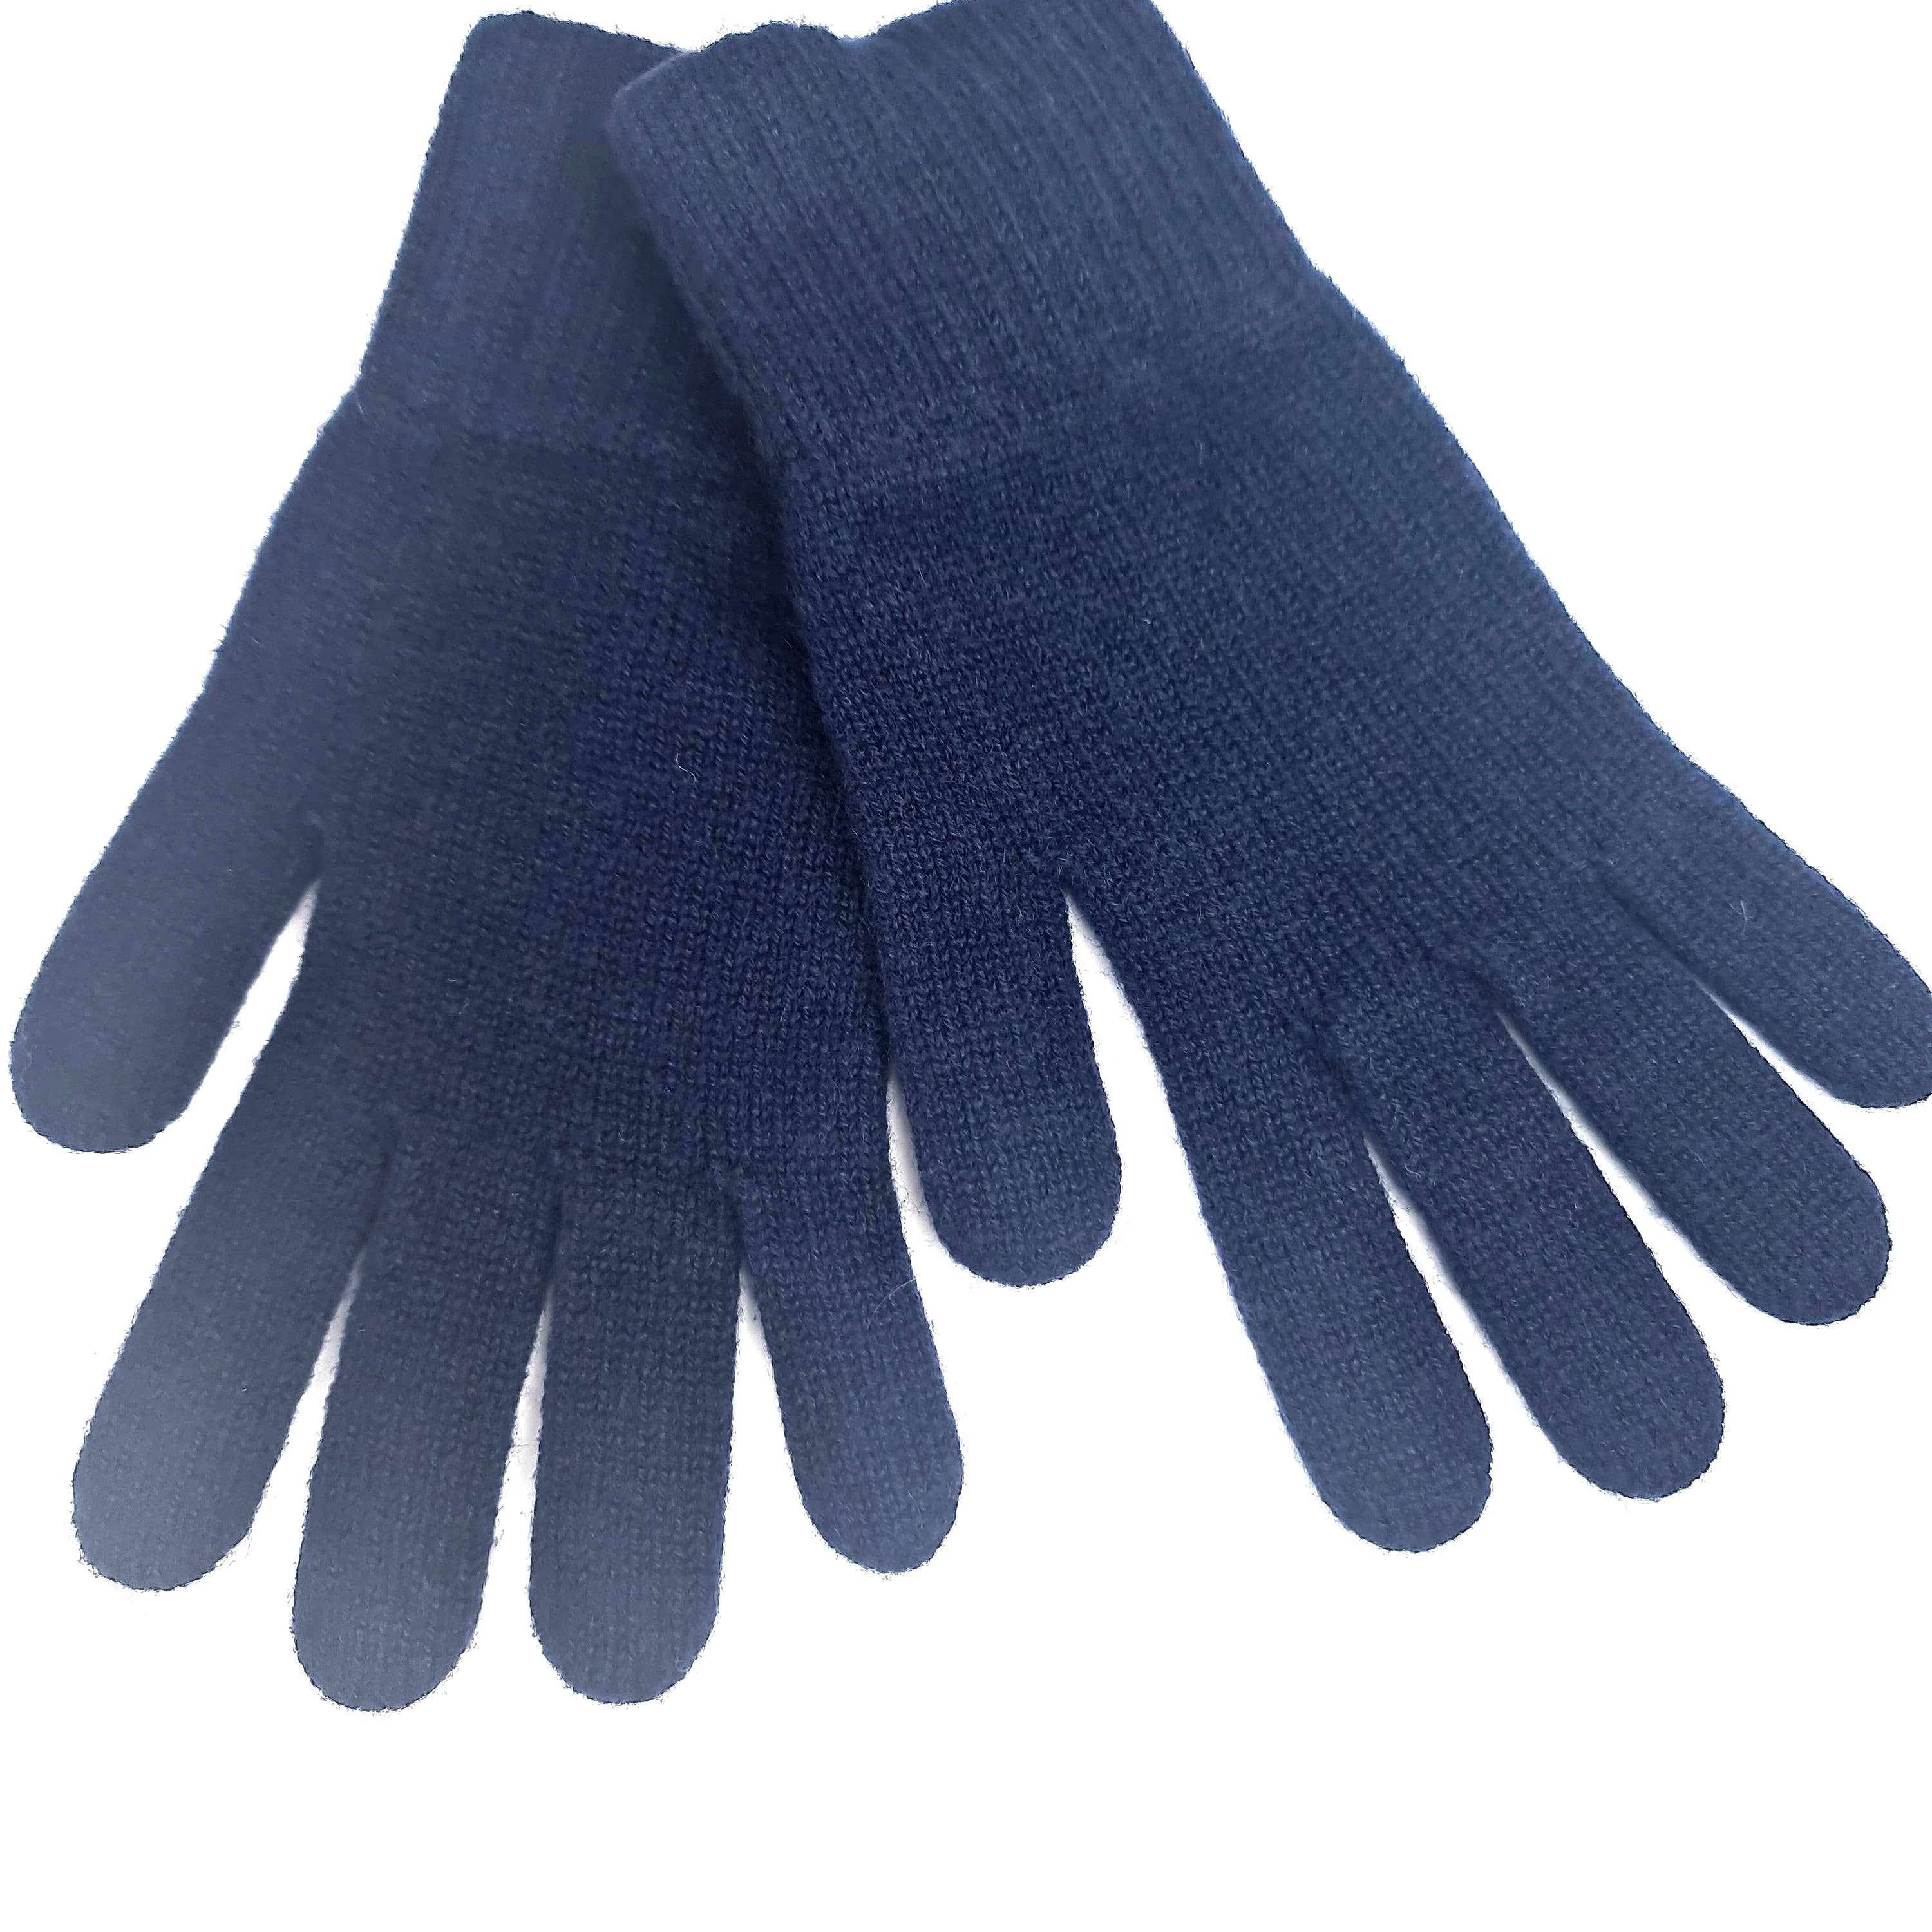 Luxurious Scottish 100% Cashmere Ladies Glove